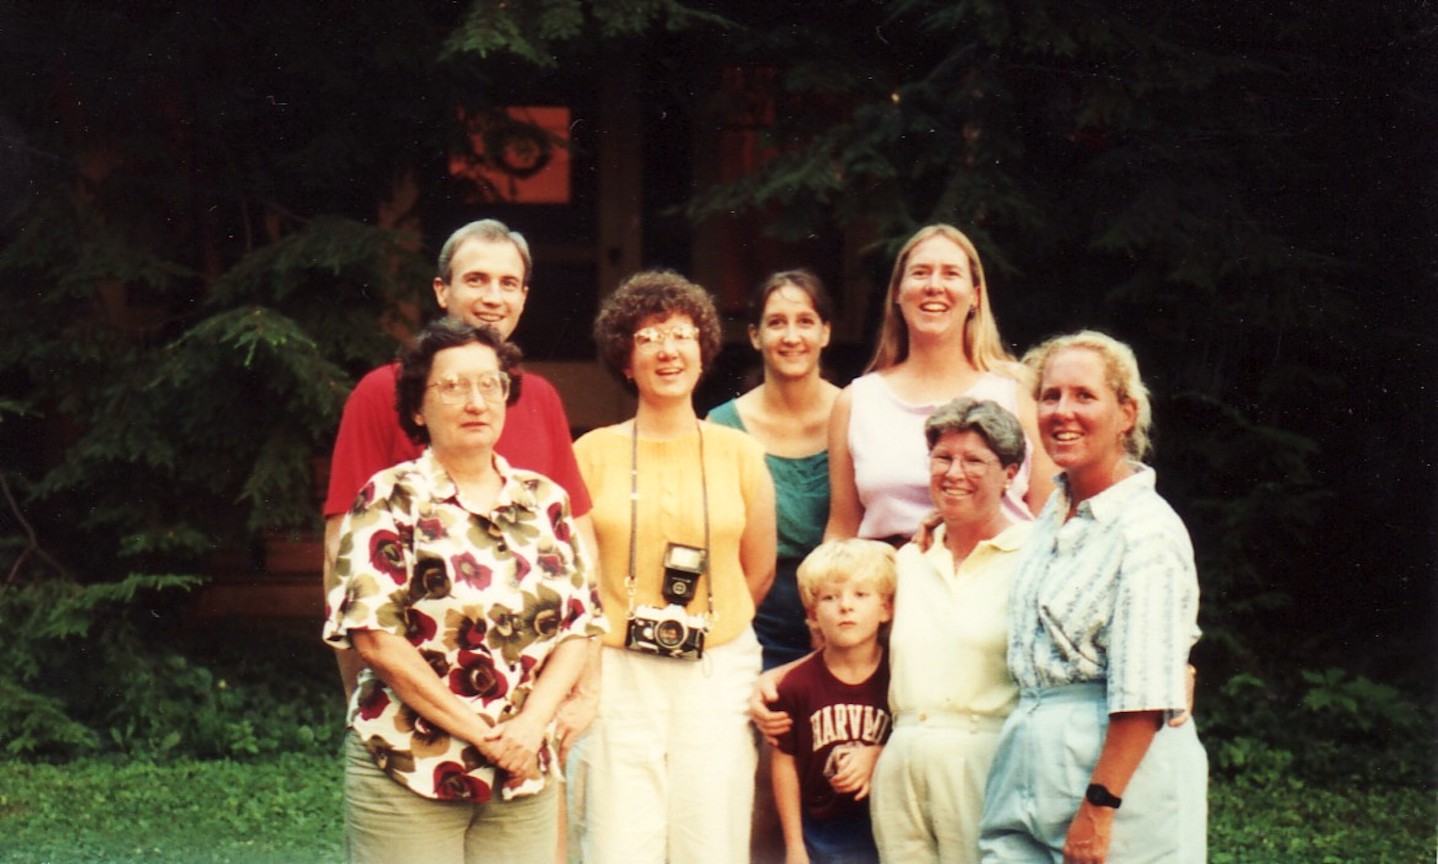 Jeff May (Karen Crossen’s husband), Karen Crossen, Joan Callahan (Jennifer’s partner), David Crossen (Jennifer’s son), Jennifer Crossen, Julie Crossen, and Katie Crossen in Lexington, KY, 1996.